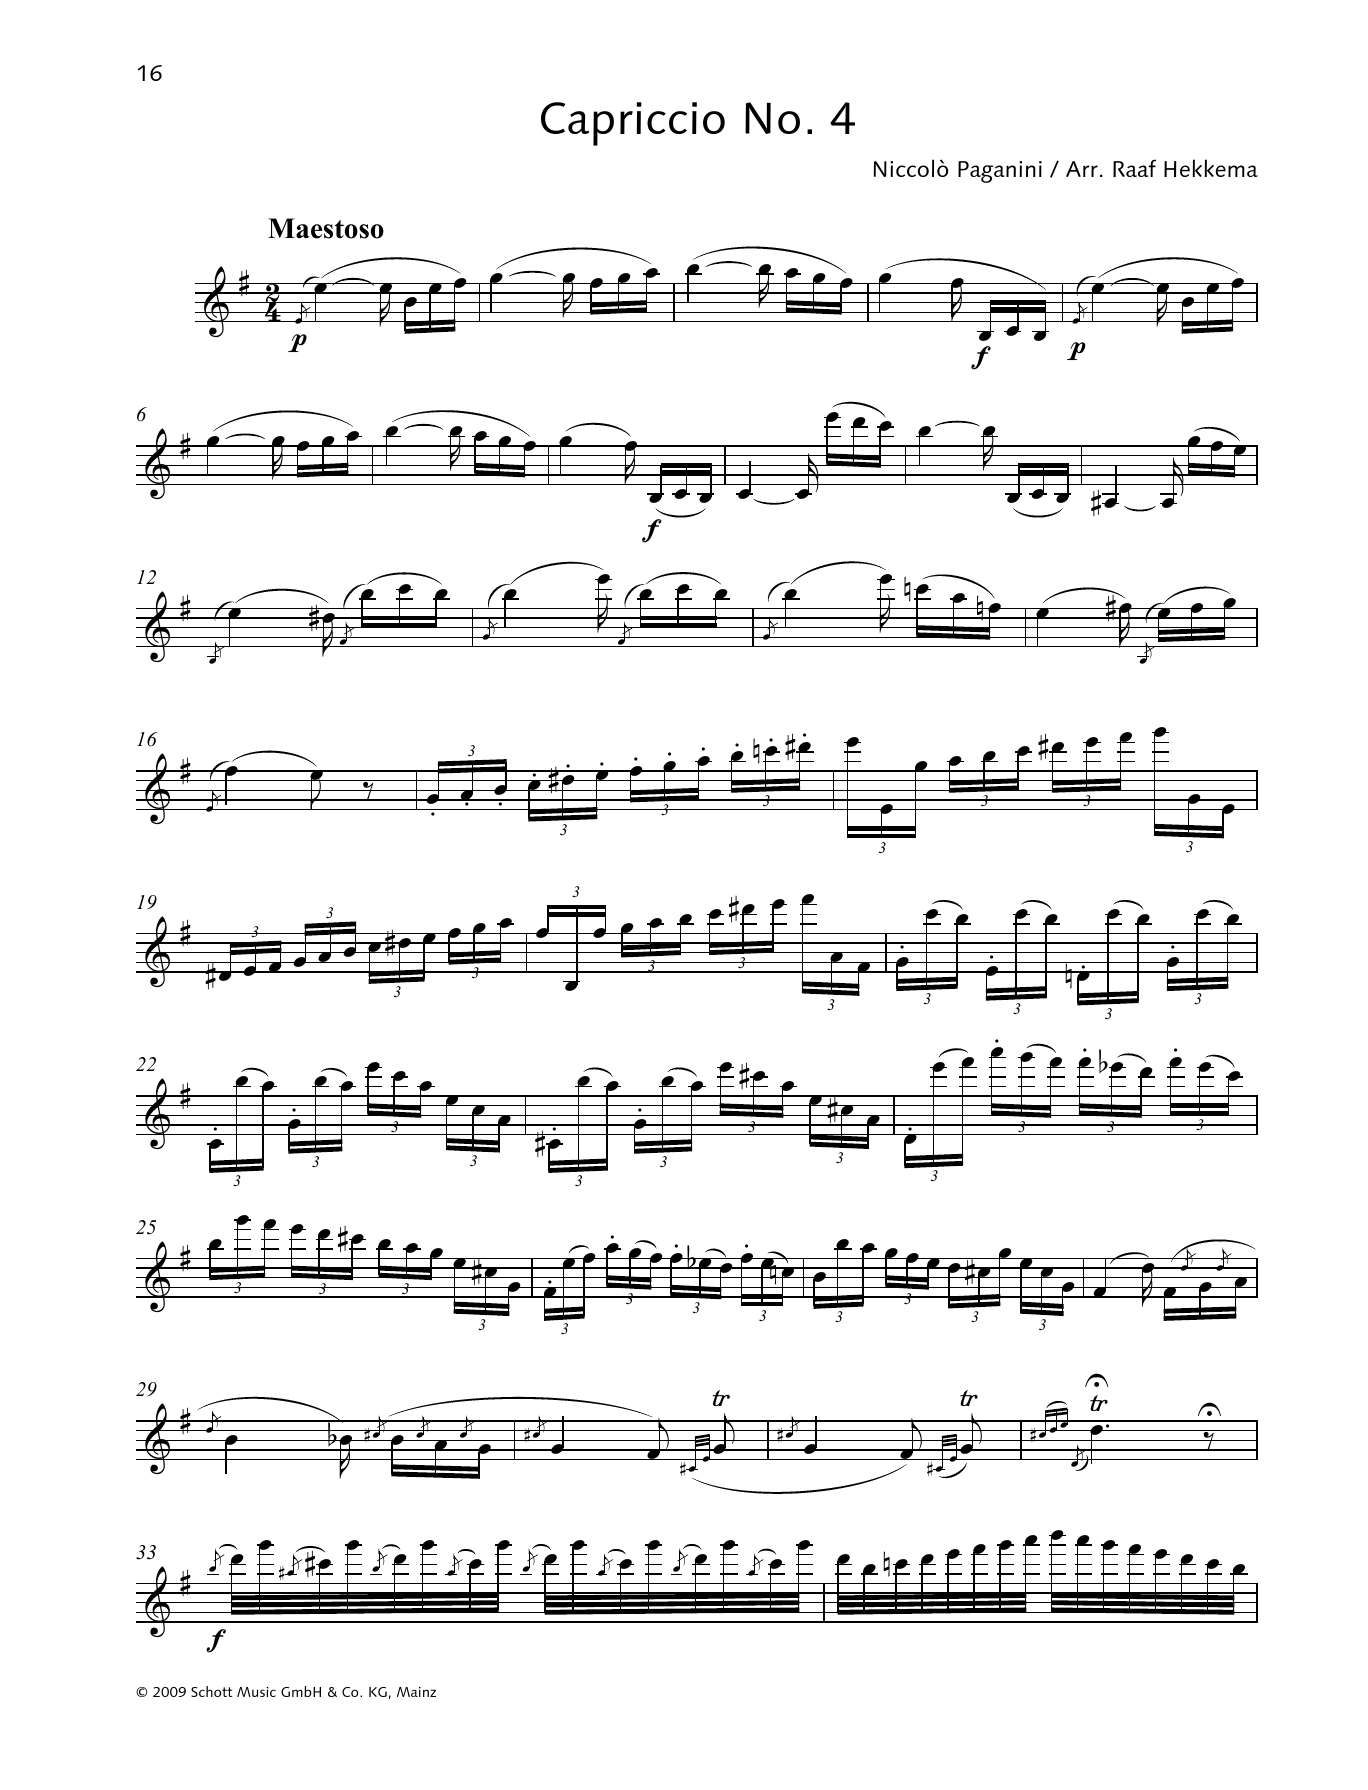 Download Niccolo Paganini Capriccio No. 4 Sheet Music